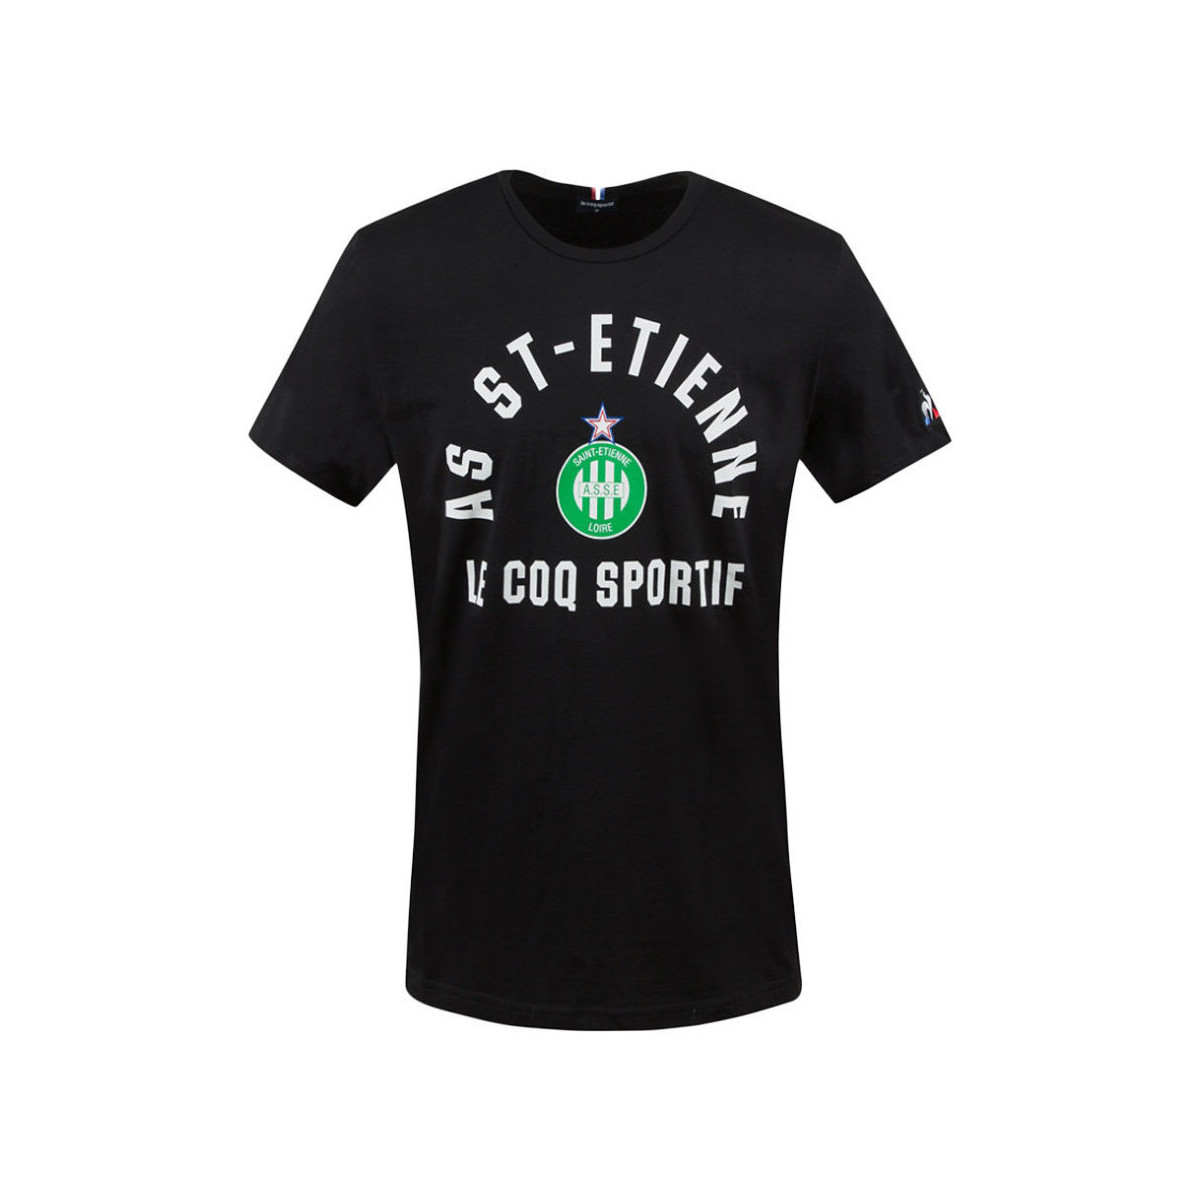 Abbigliamento Uomo Top / T-shirt senza maniche Le Coq Sportif 2020582 Nero